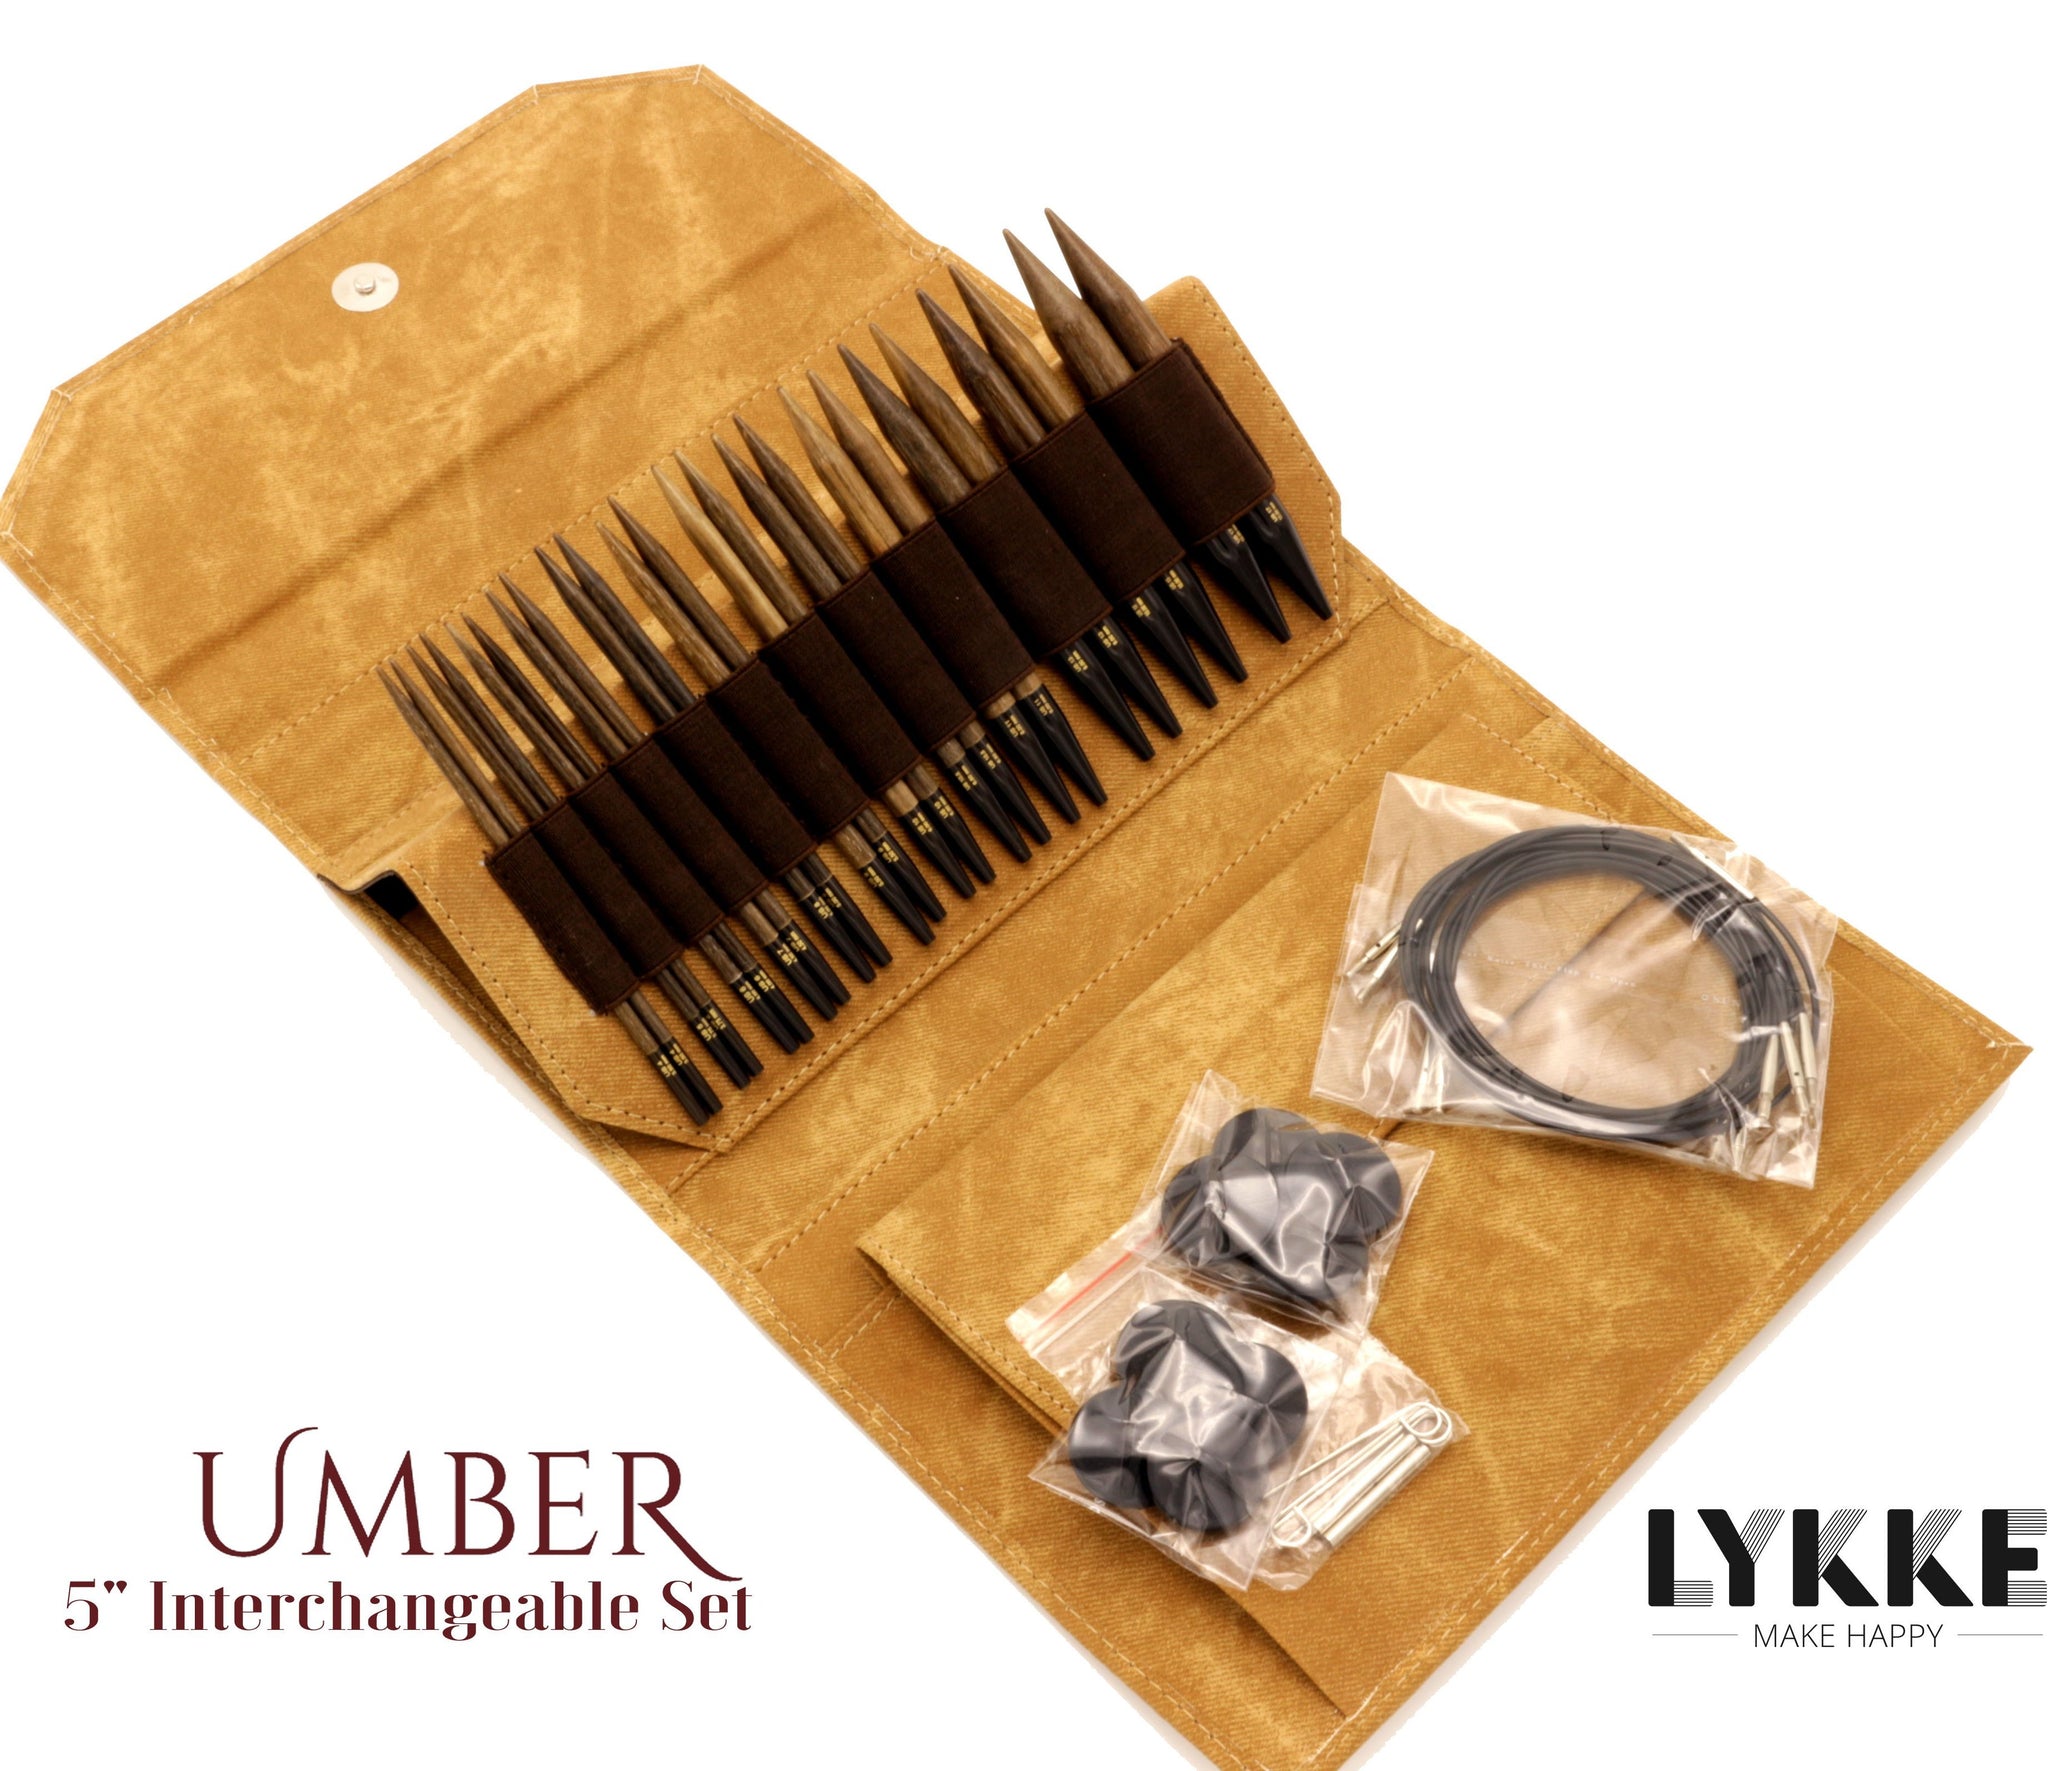 LYKKE Umber – The Needle Store